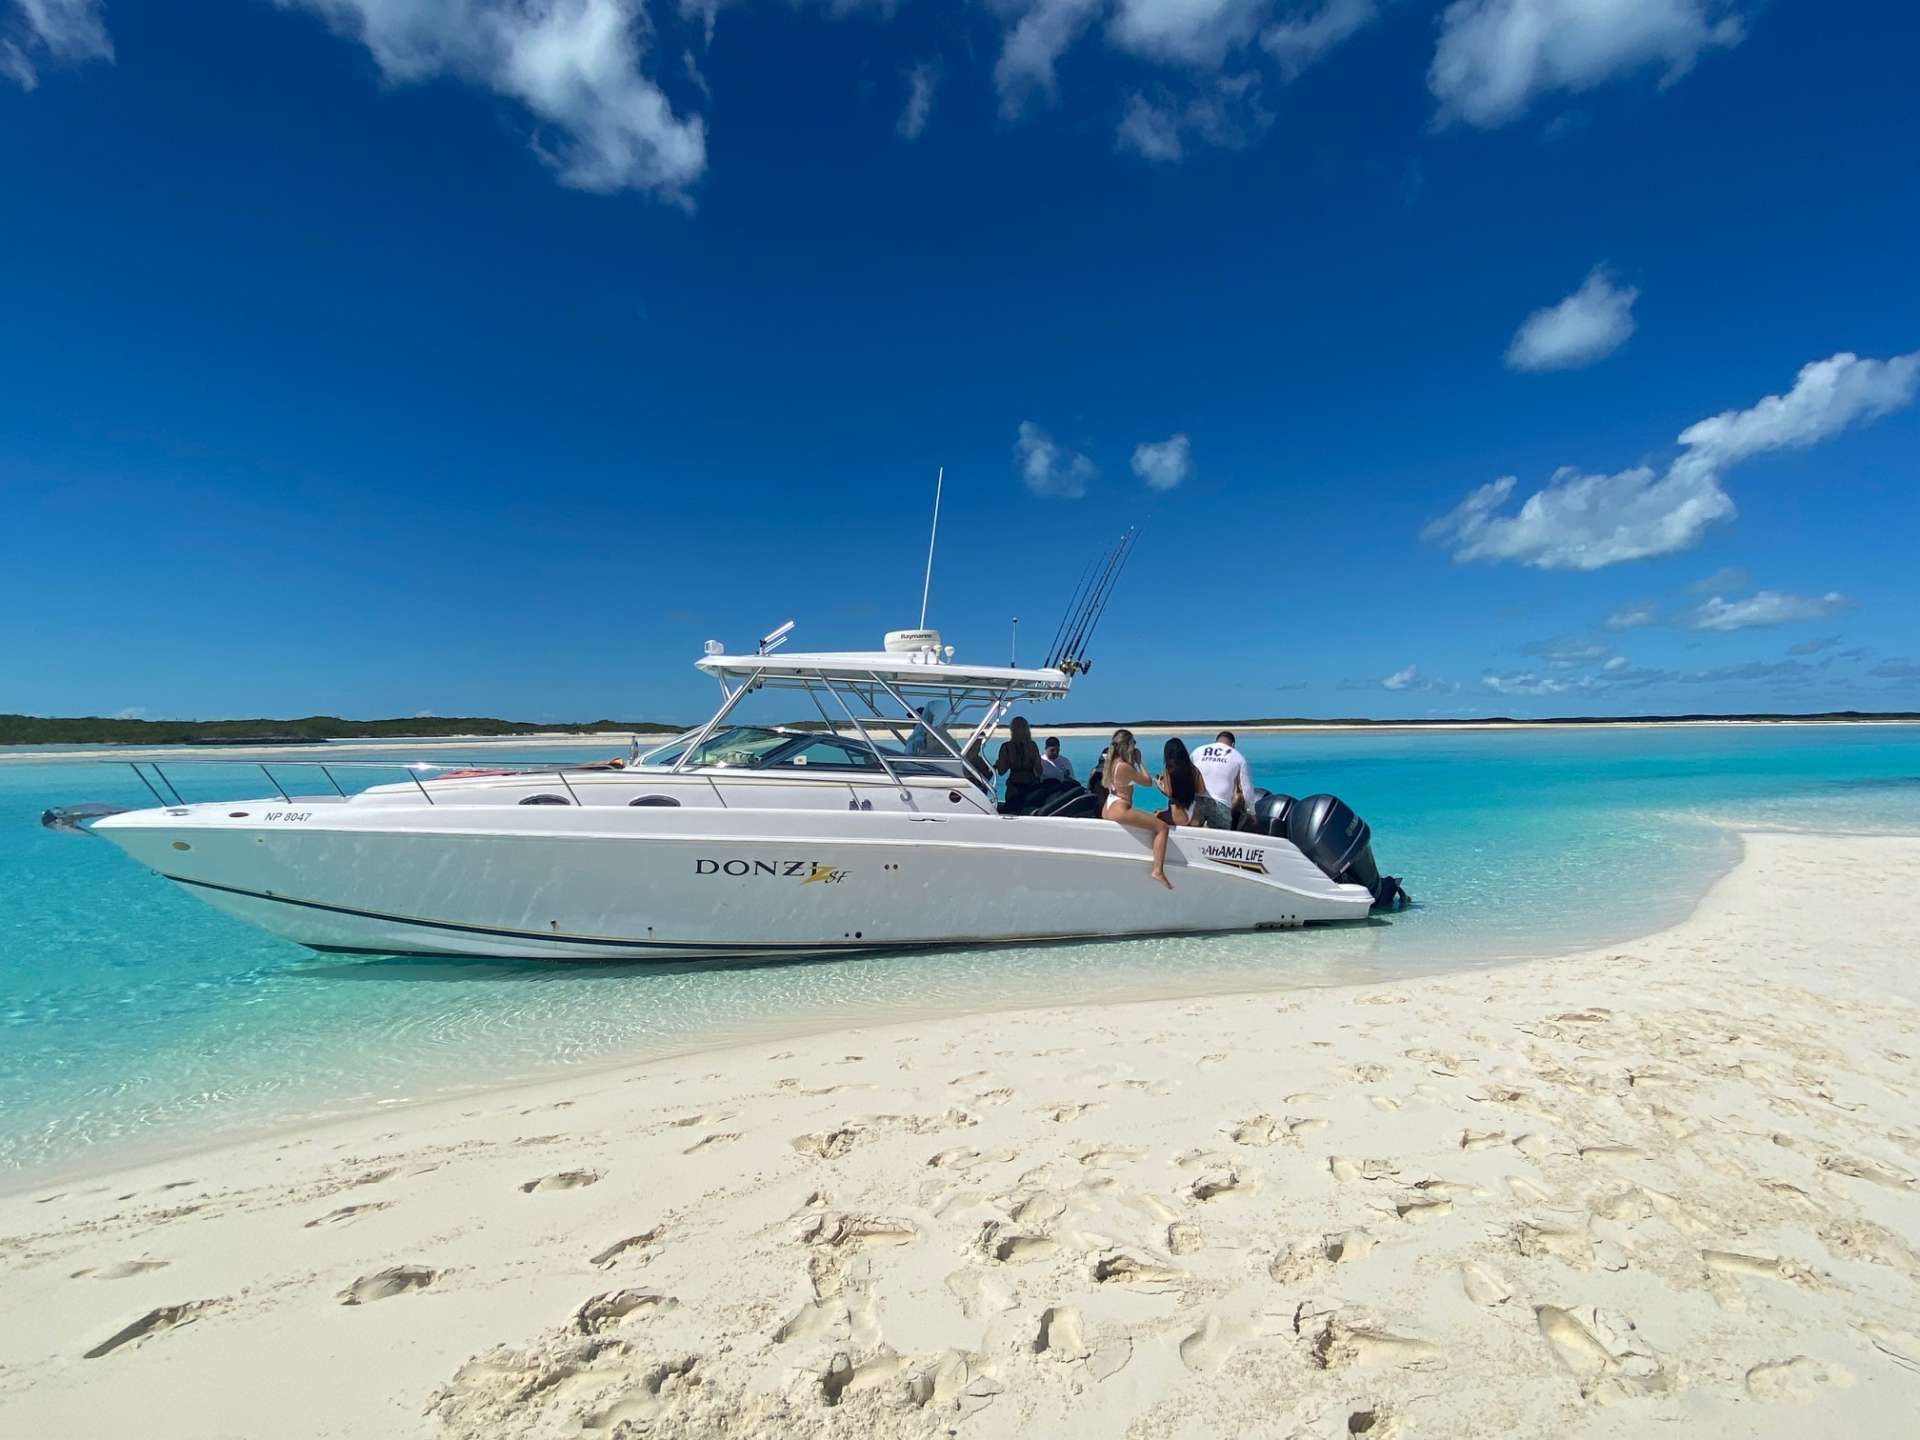 Zsf - Yacht Charter Bahamas & Boat hire in Bahamas New Providence Nassau Palm Cay One Marina 1